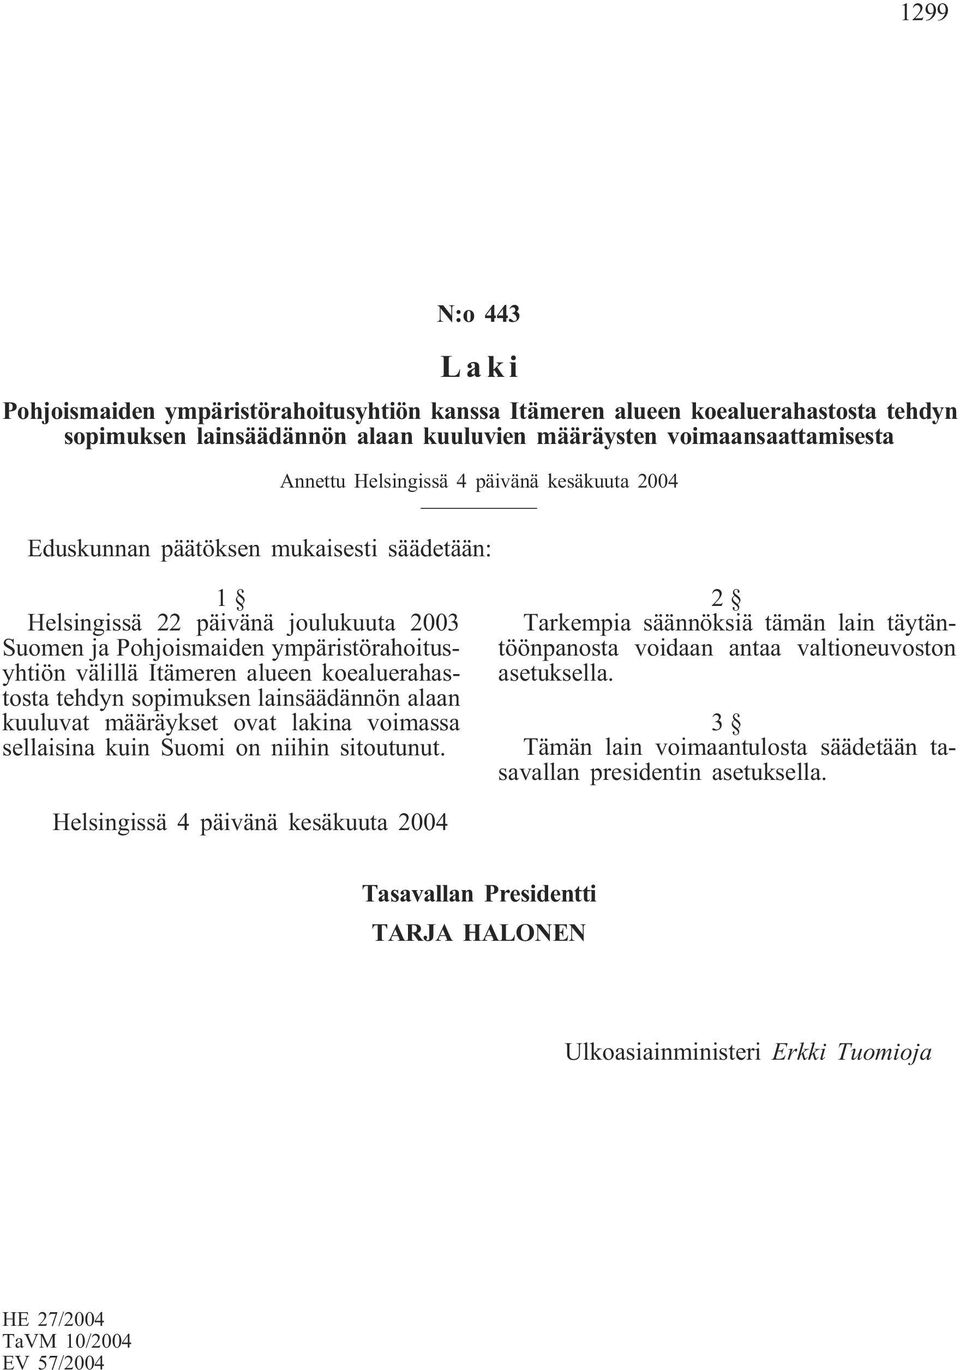 tehdyn sopimuksen lainsäädännön alaan kuuluvat määräykset ovat lakina voimassa sellaisina kuin Suomi on niihin sitoutunut.